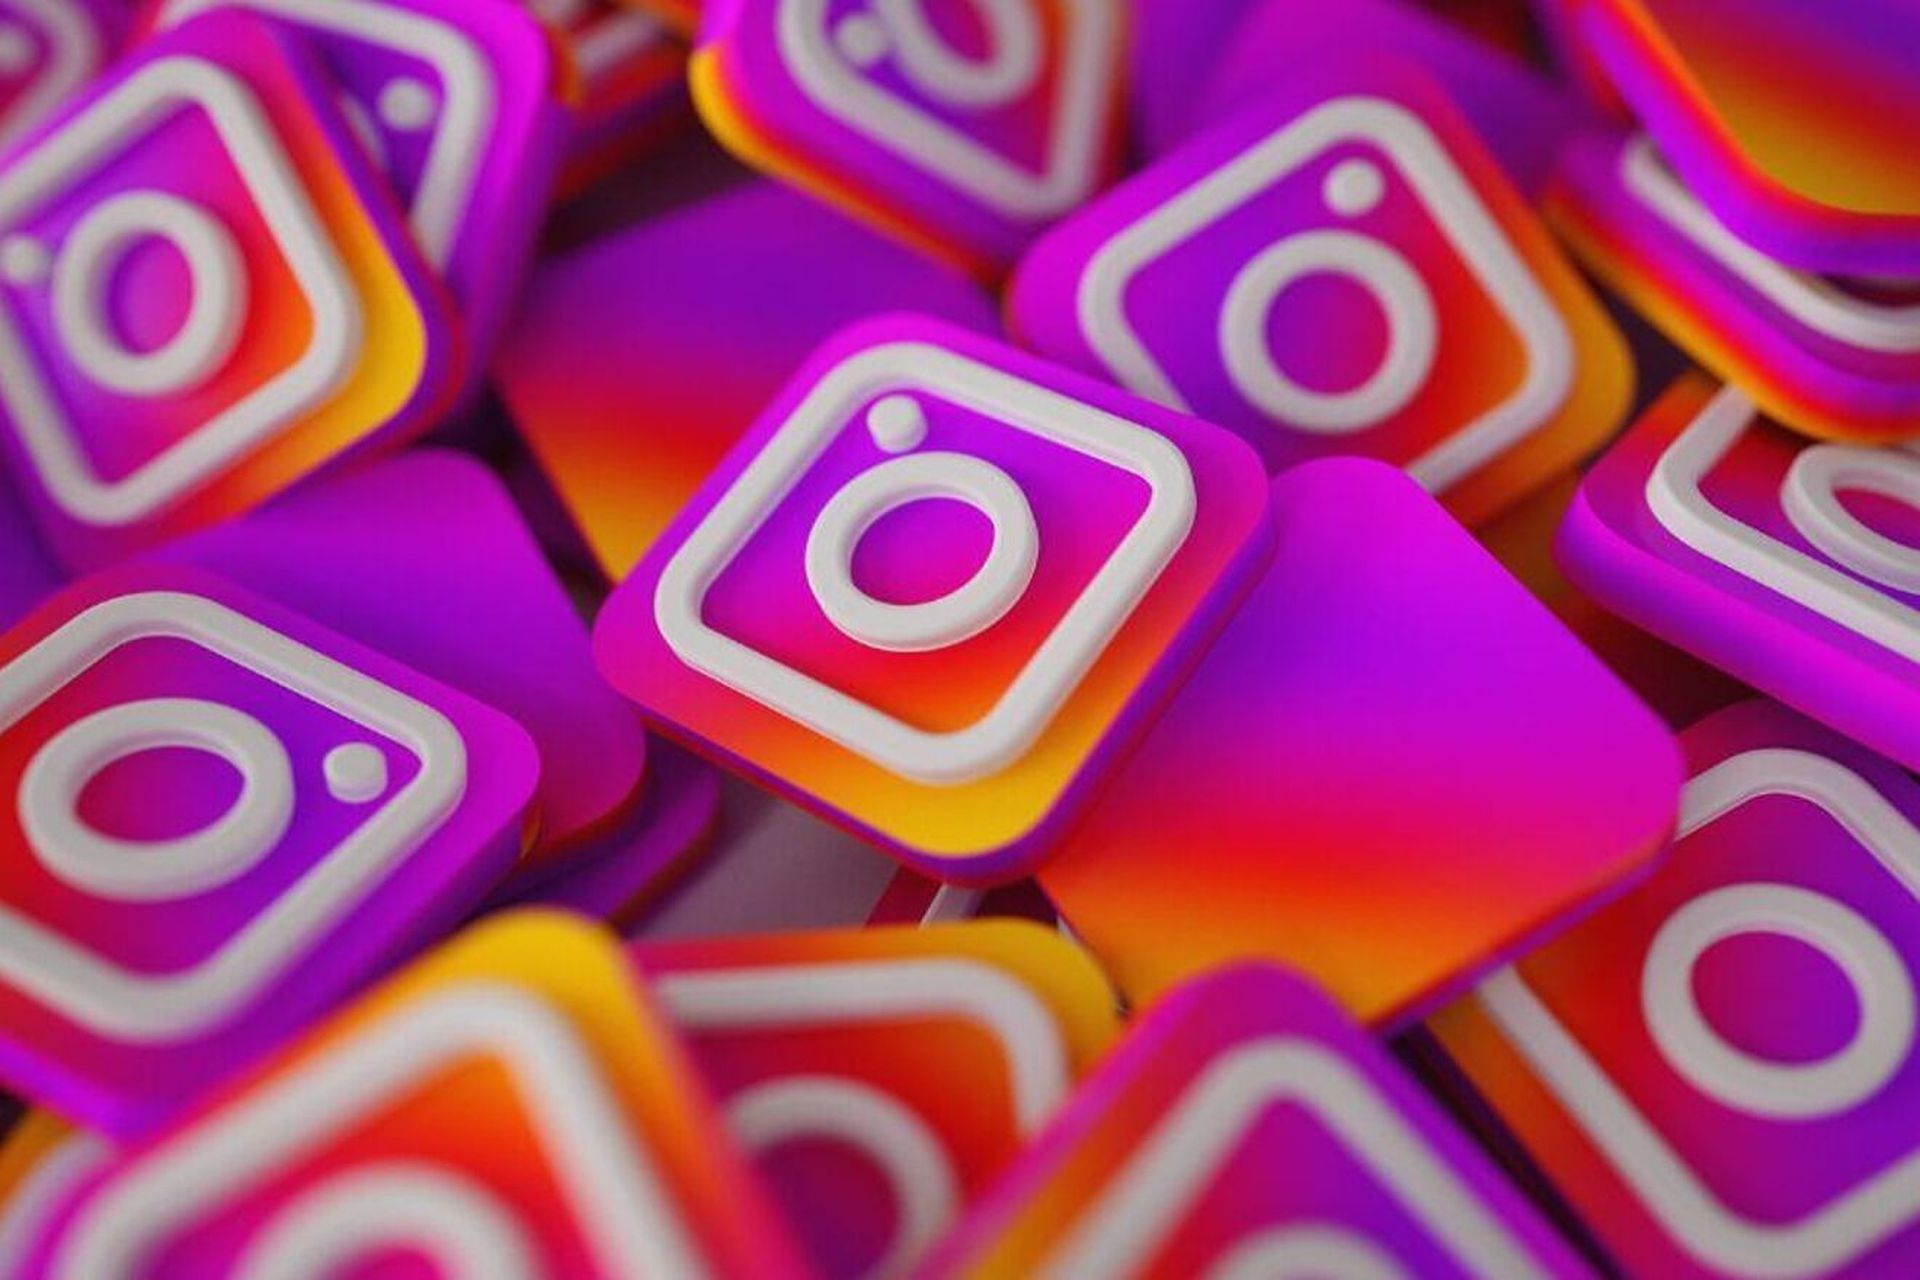 Se publica el informe de predicciones de tendencias de Instagram para 2023